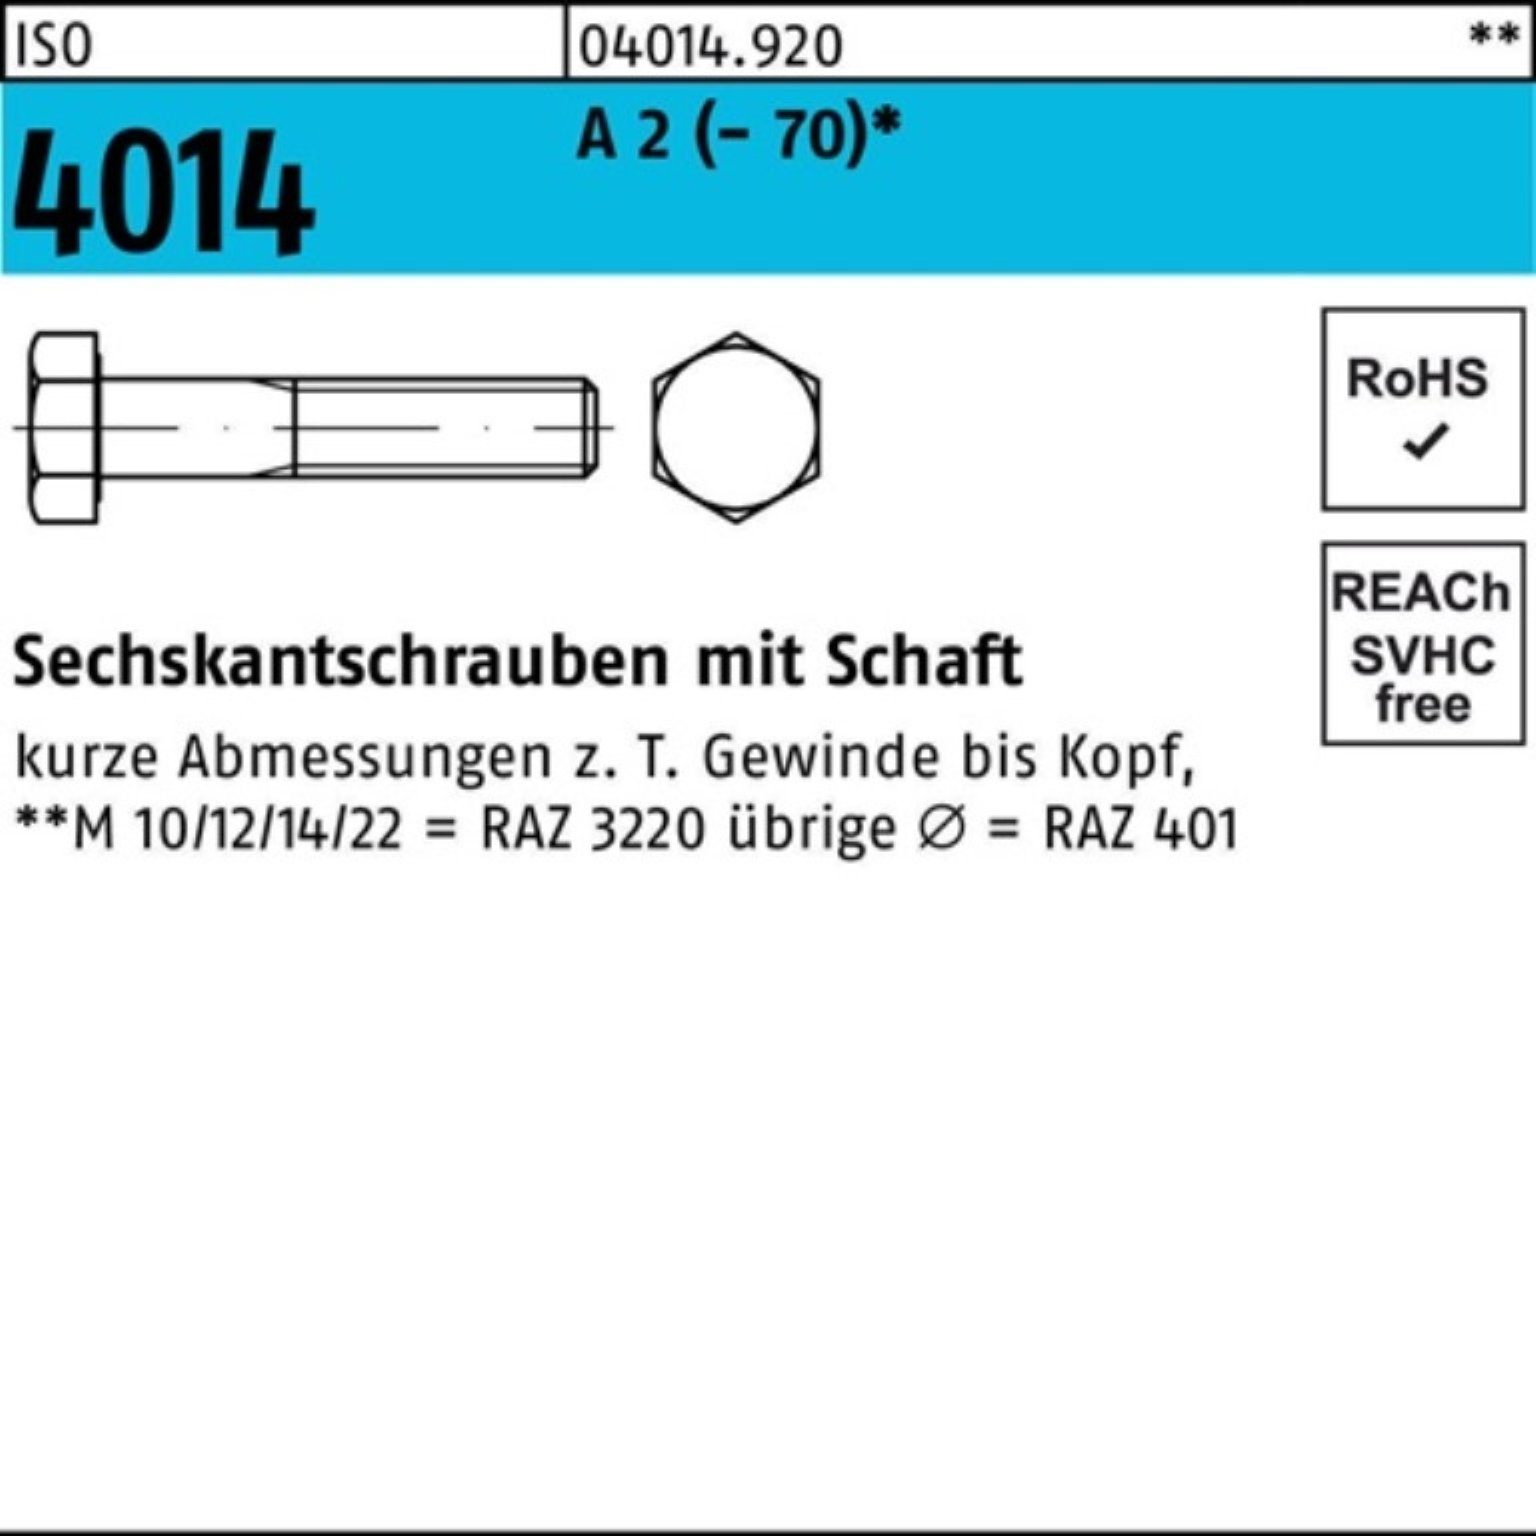 Bufab Sechskantschraube 100er Pack Sechskantschraube ISO 4014 Schaft M14x 120 A 2 (70) 25 St